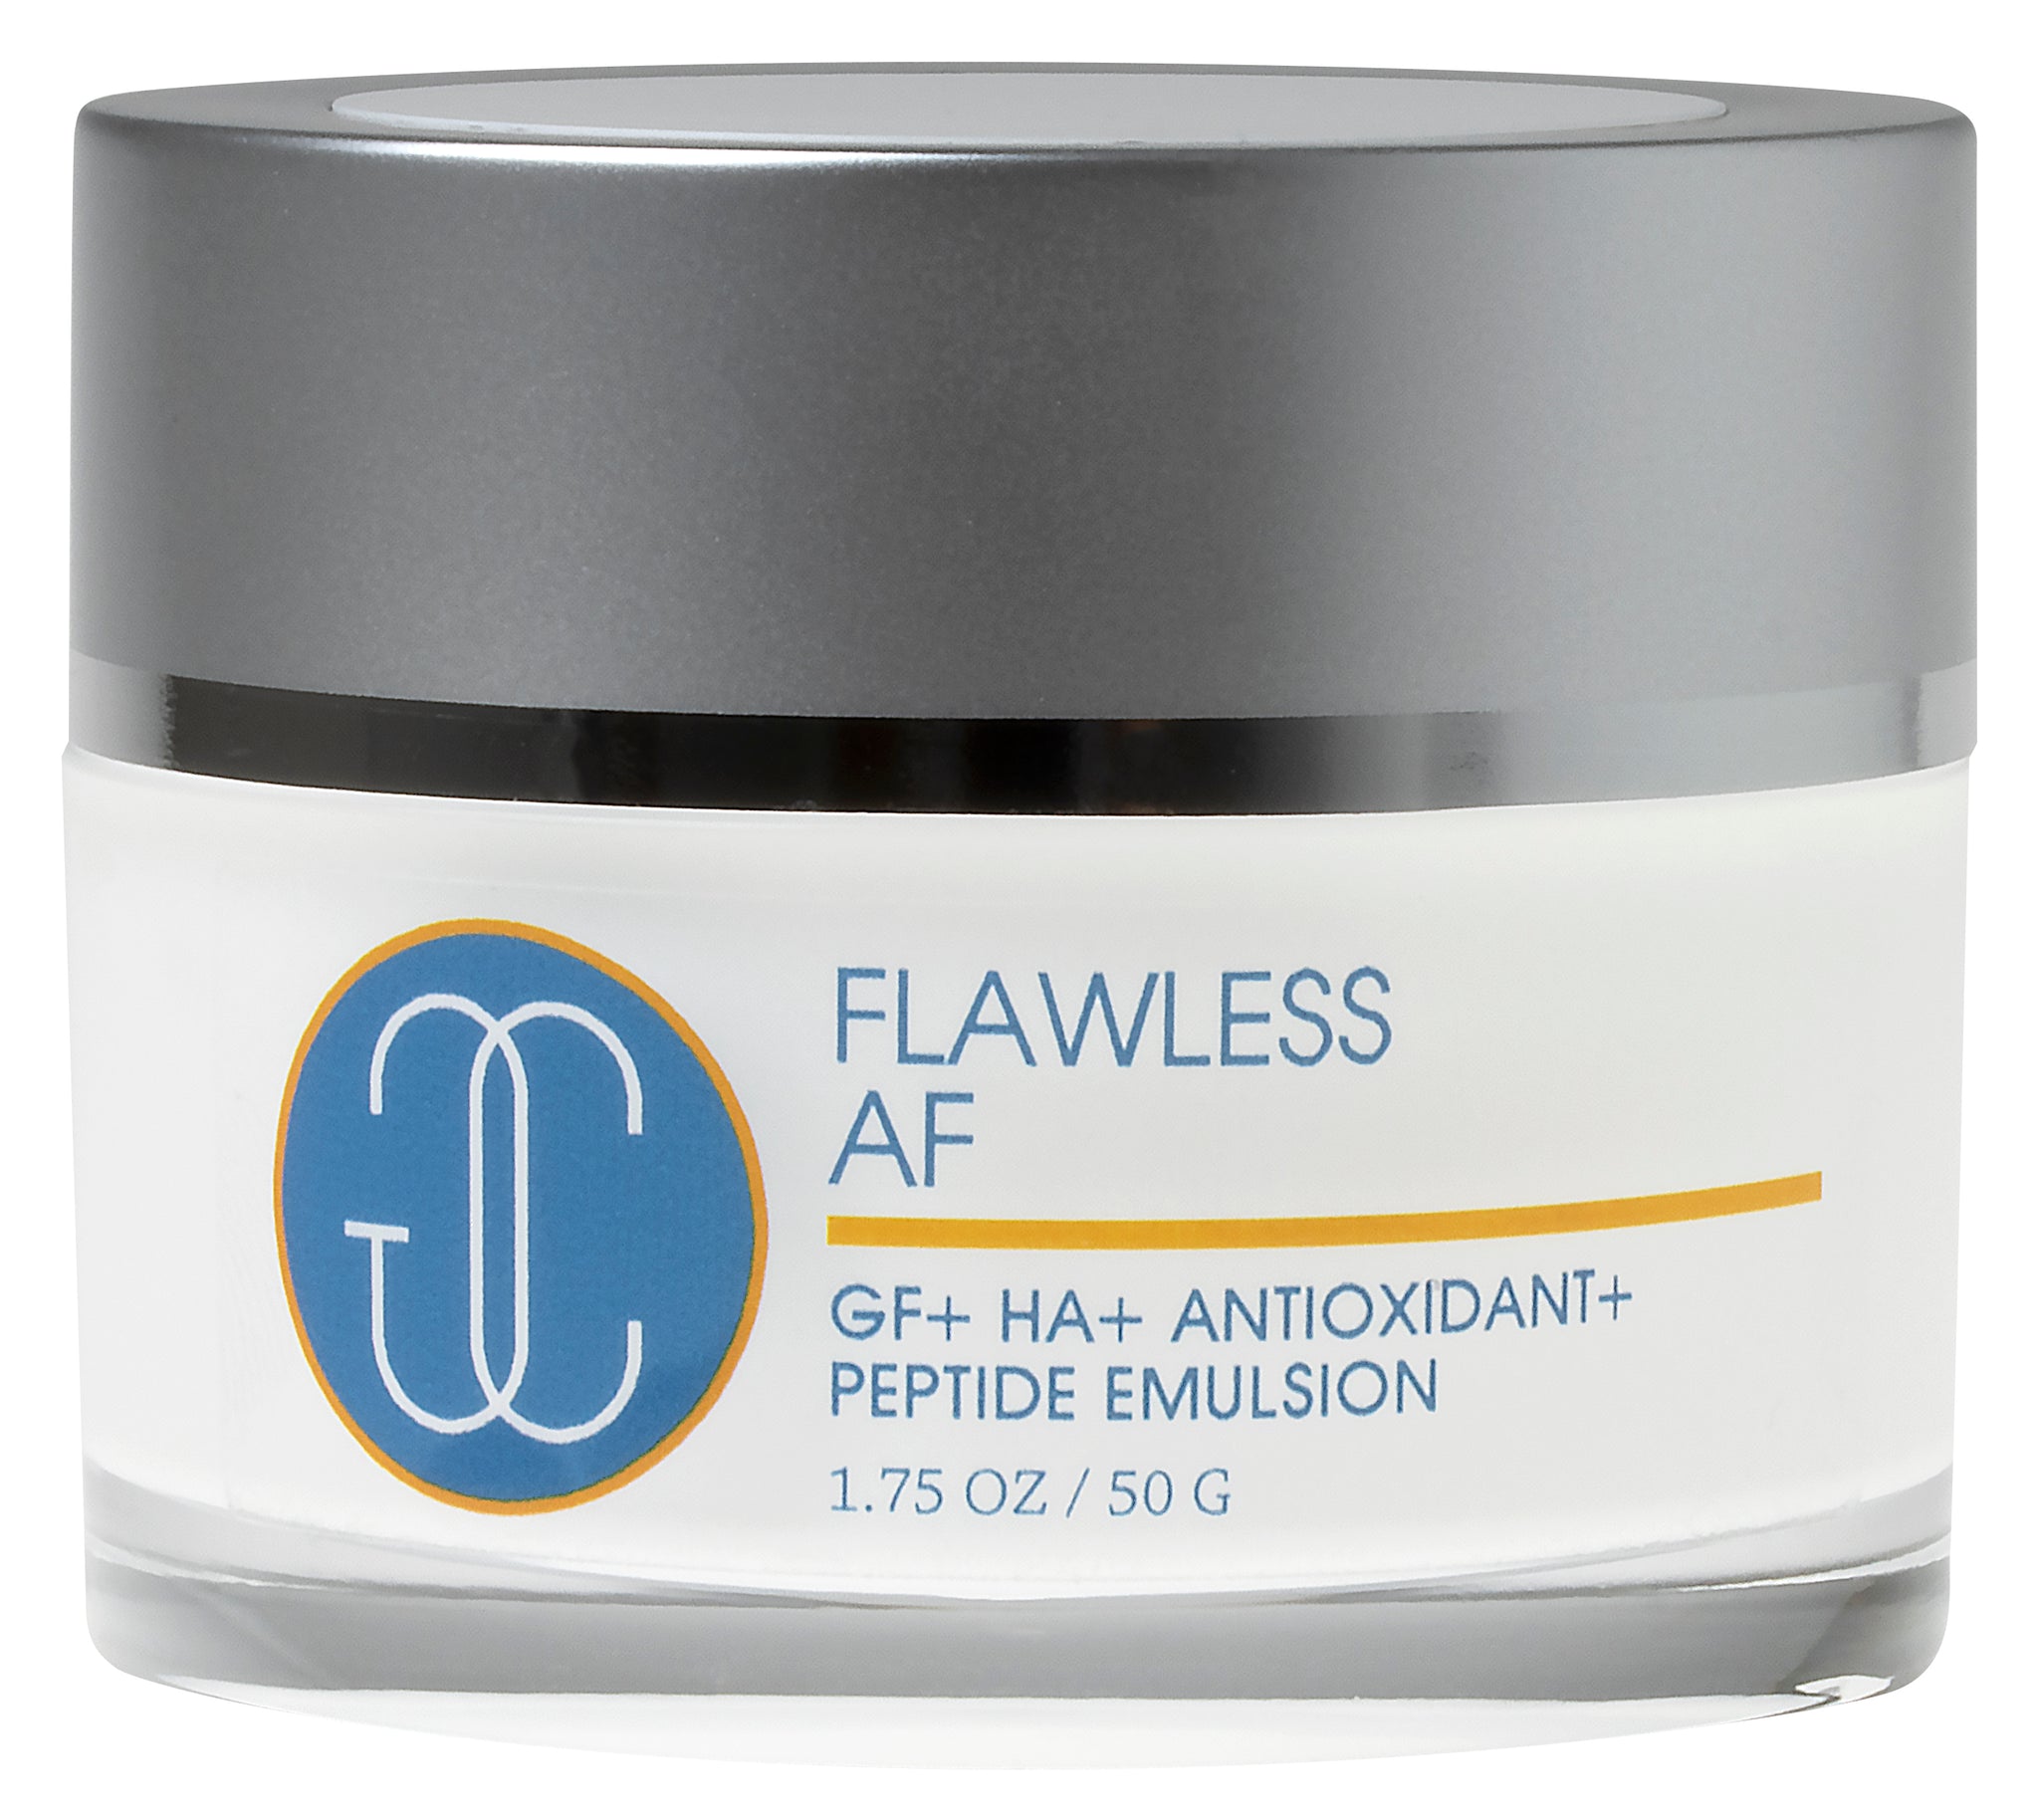 Flawless AF | GR+ HA + Antioxidant + Peptide Emulsion